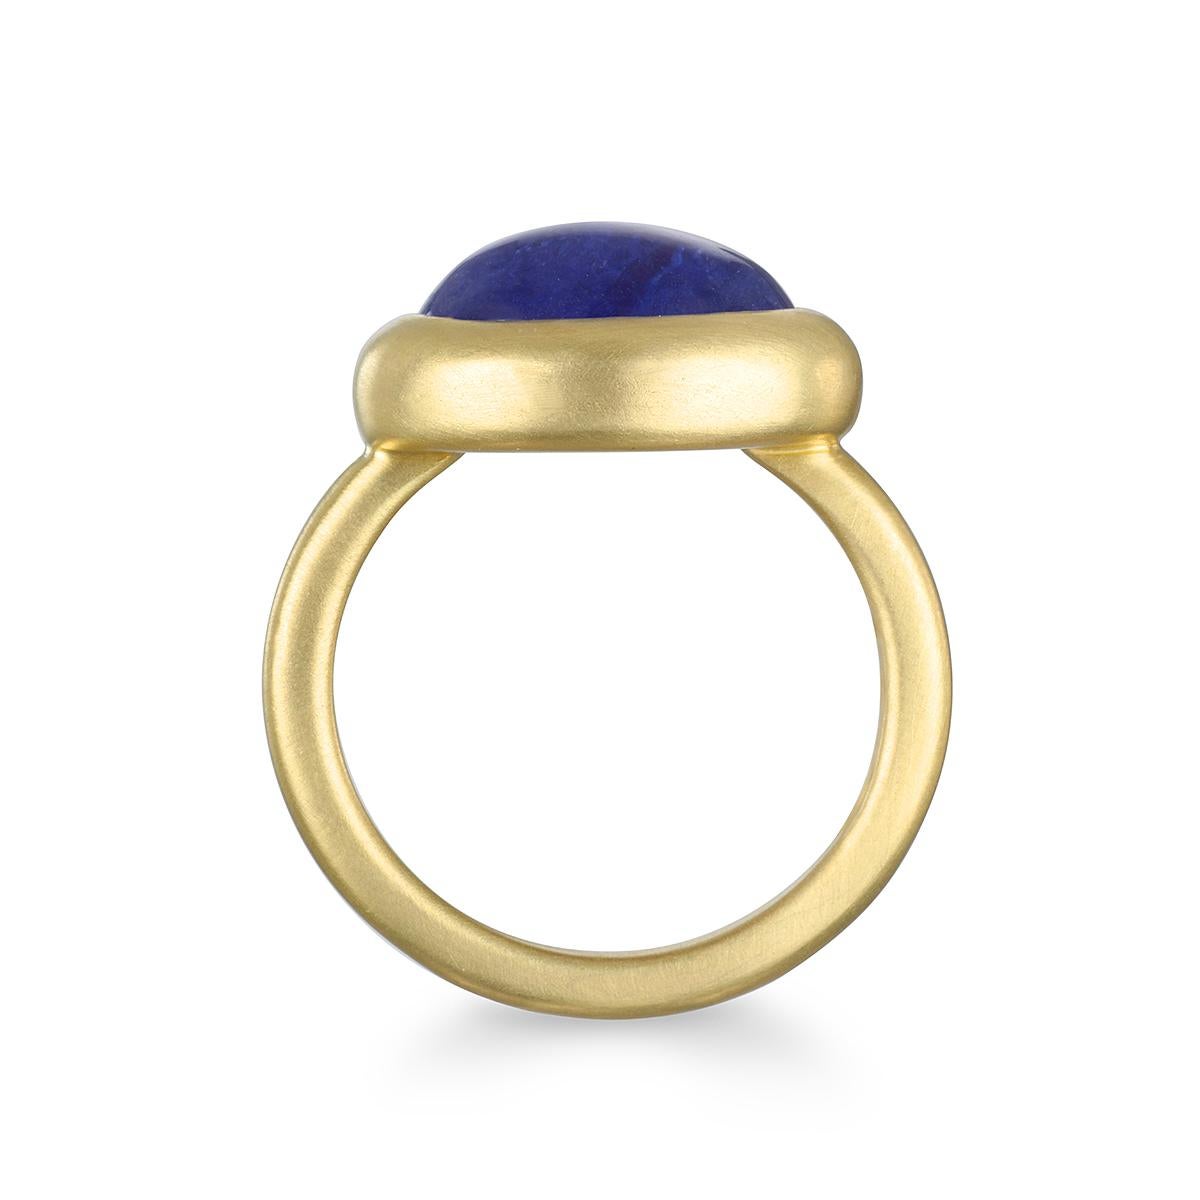 Der 18 Karat Gold Tanzanite Cabachon Ring von Faye Kim mit seinem faszinierenden blau-violetten Farbton ist wunderschön eingefasst und mattiert. Der Ring kann einzeln oder gestapelt getragen werden und sorgt mit Sicherheit für